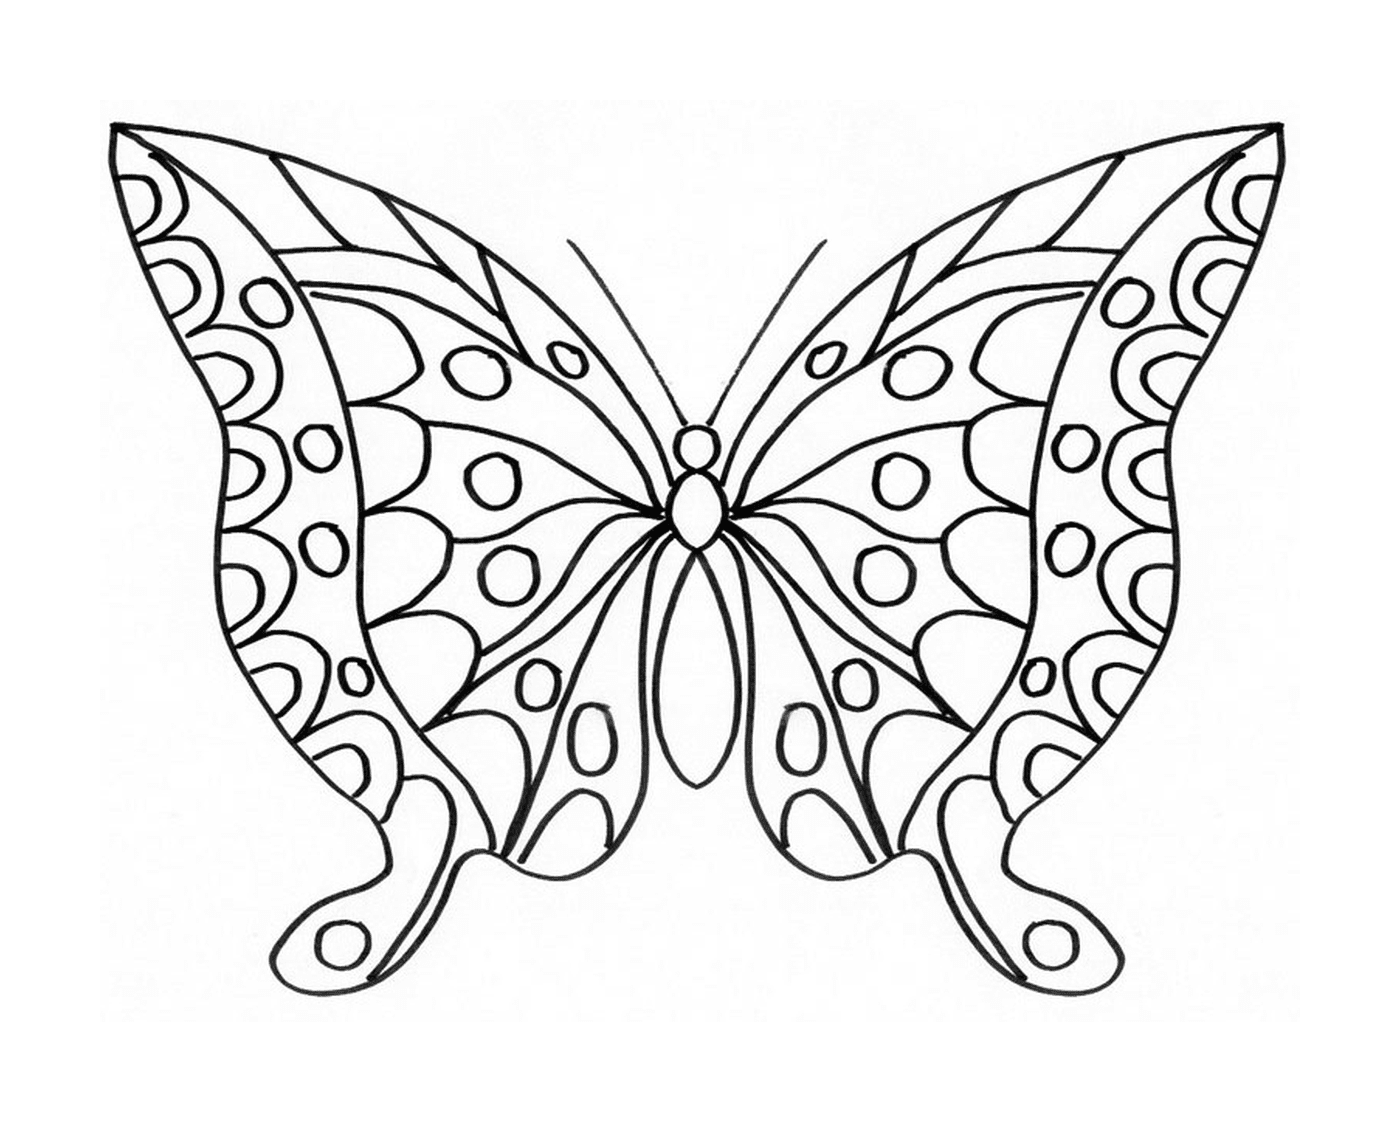  薄薄的蝴蝶,有闪闪的翅膀 